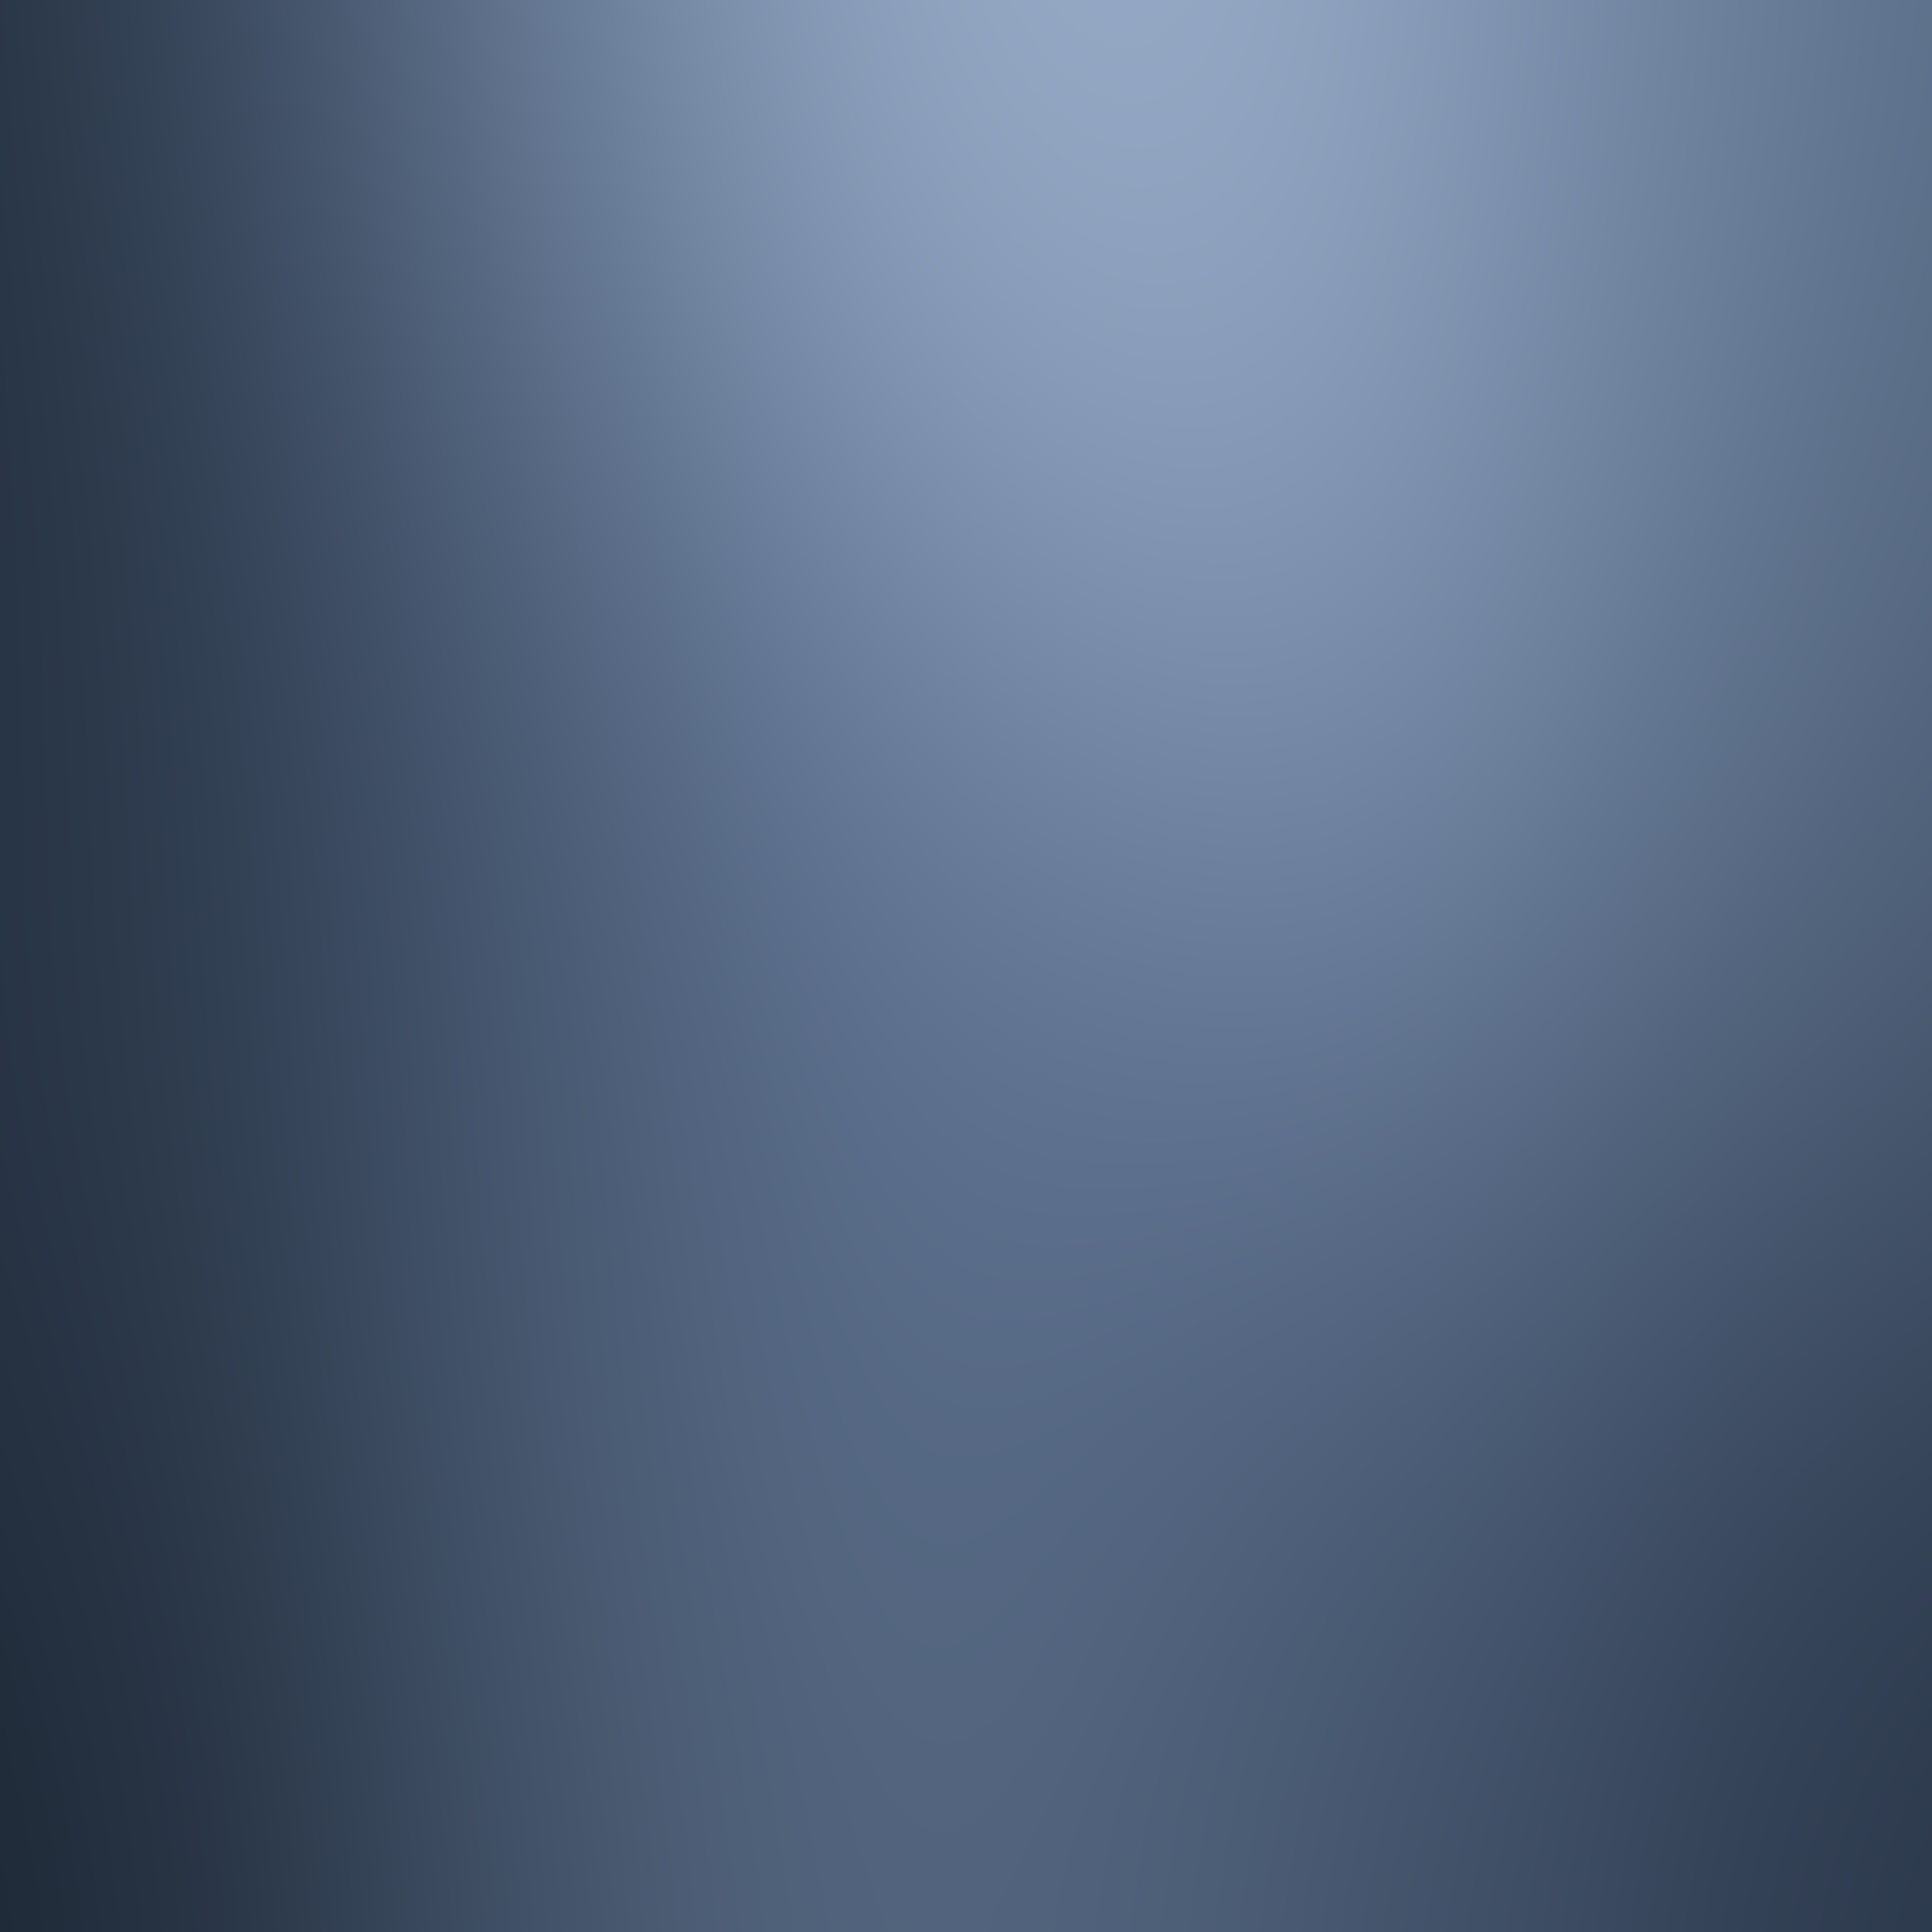 2048x2048 Smooth Navy Gray iOS7 iPad Wallpaper HD